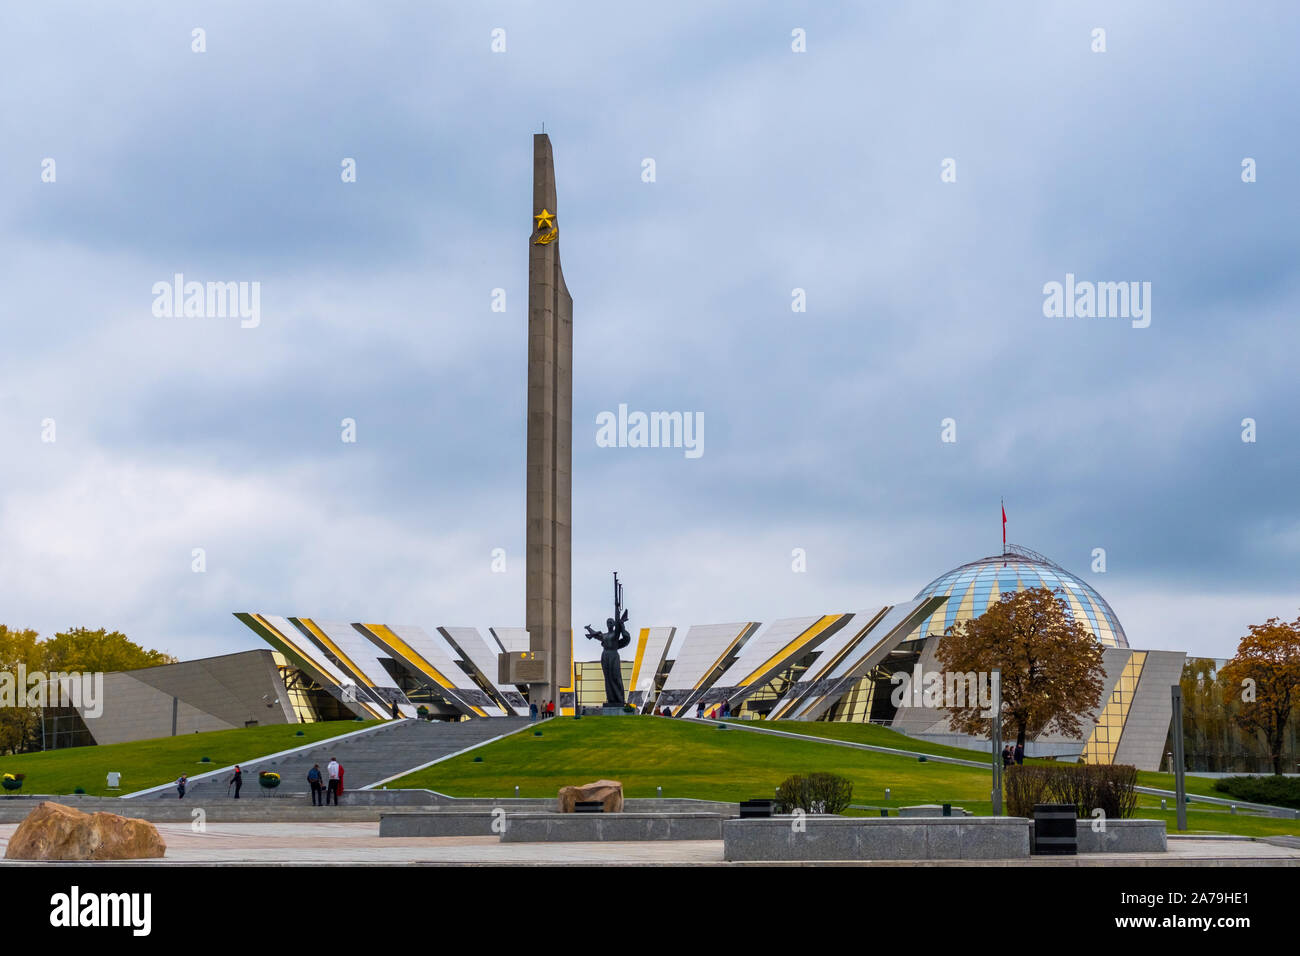 Minsk, Belarus - 13 octobre, 2019 : Héros Ville Minsk et obélisque monument situé près de Musée de la Biélorusse Grande Guerre Patriotique à Minsk, Bélarus Banque D'Images